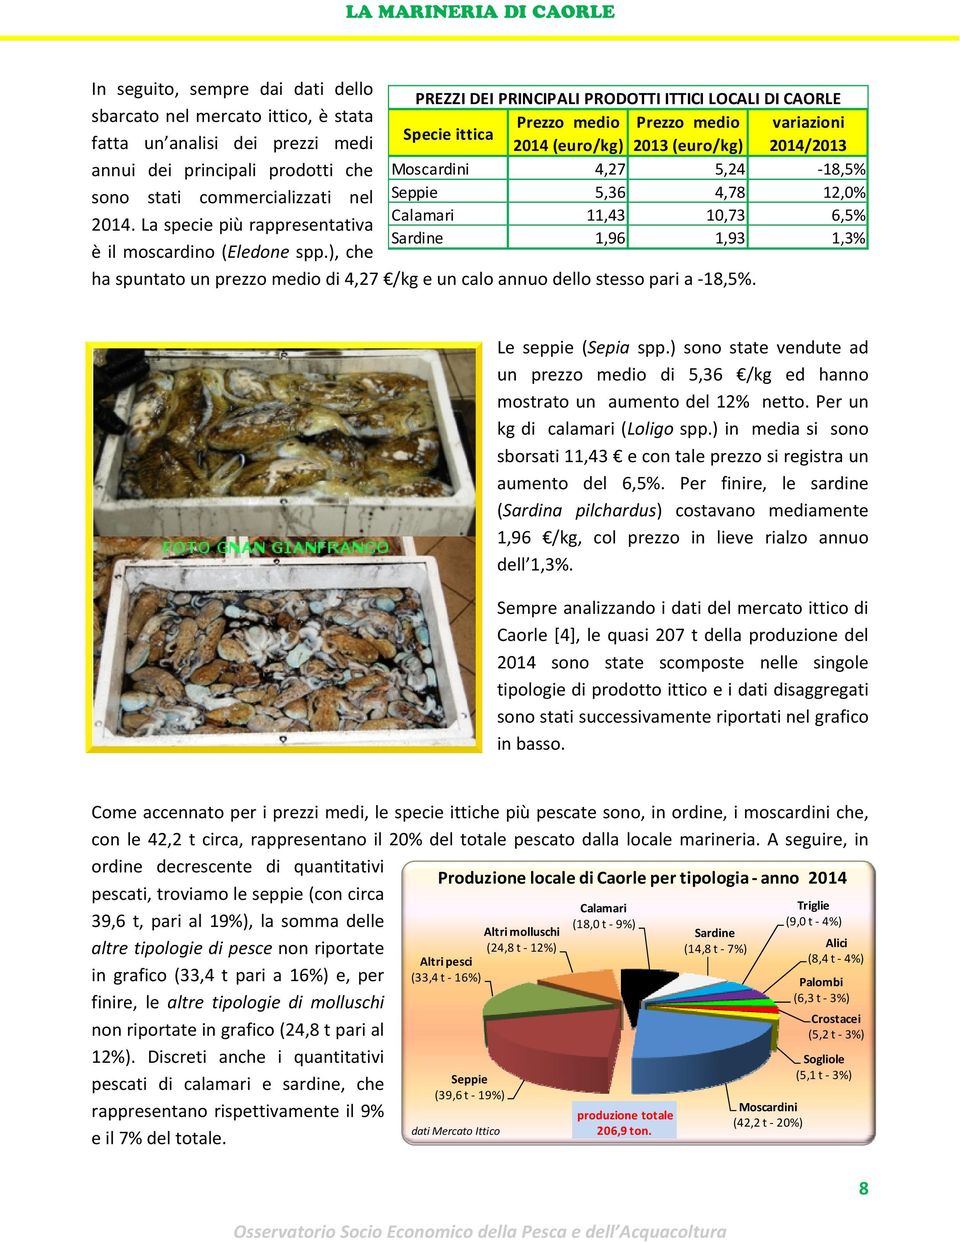 La specie più rappresentativa Sardine 1,96 1,93 1,3% è il moscardino (Eledone spp.), che ha spuntato un prezzo medio di 4,27 /kg e un calo annuo dello stesso pari a 18,5%. Le seppie (Sepia spp.